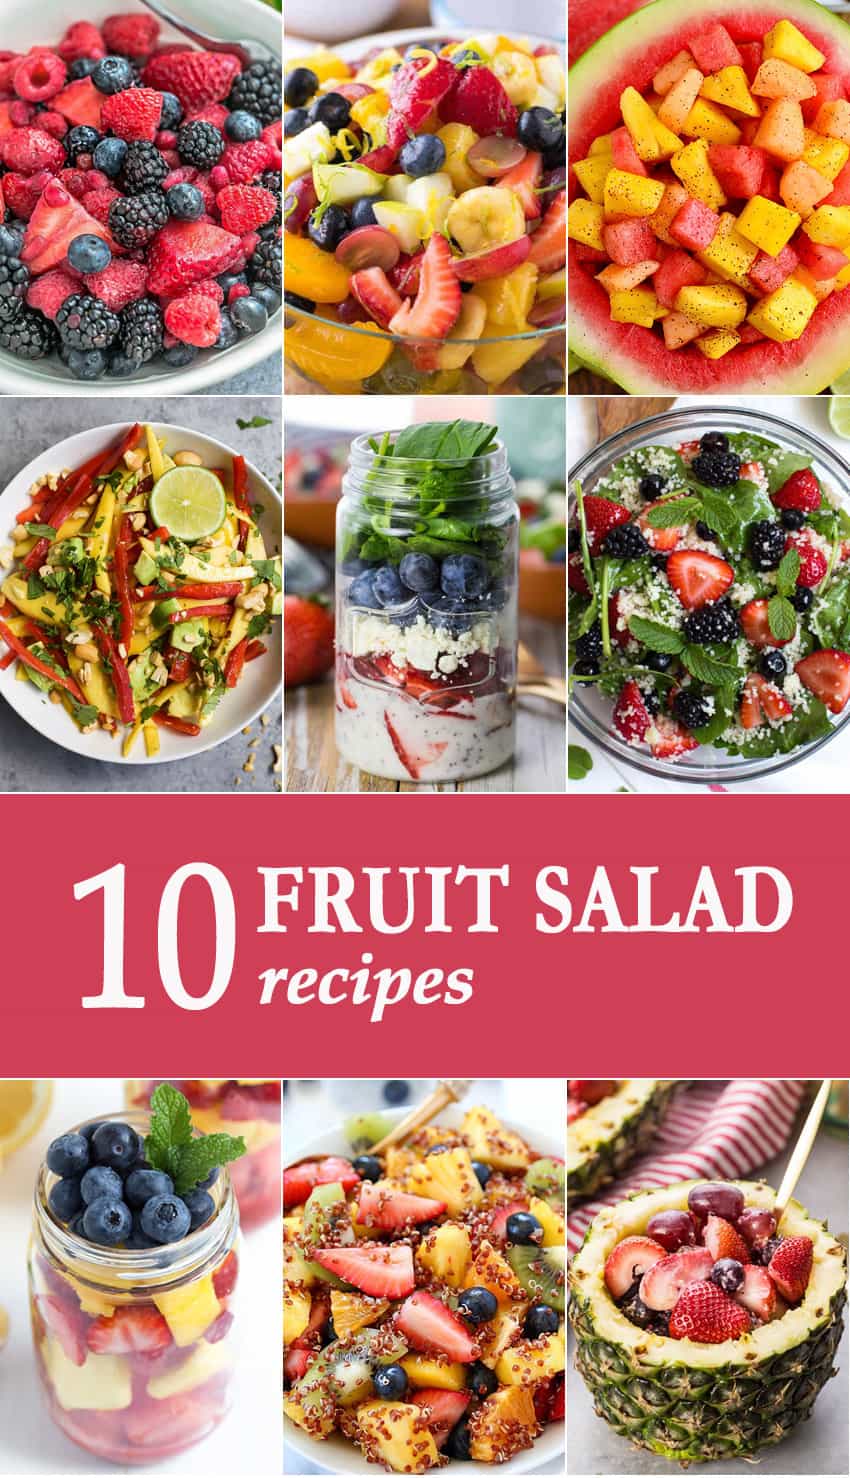 10 Fruit Salad Recipes